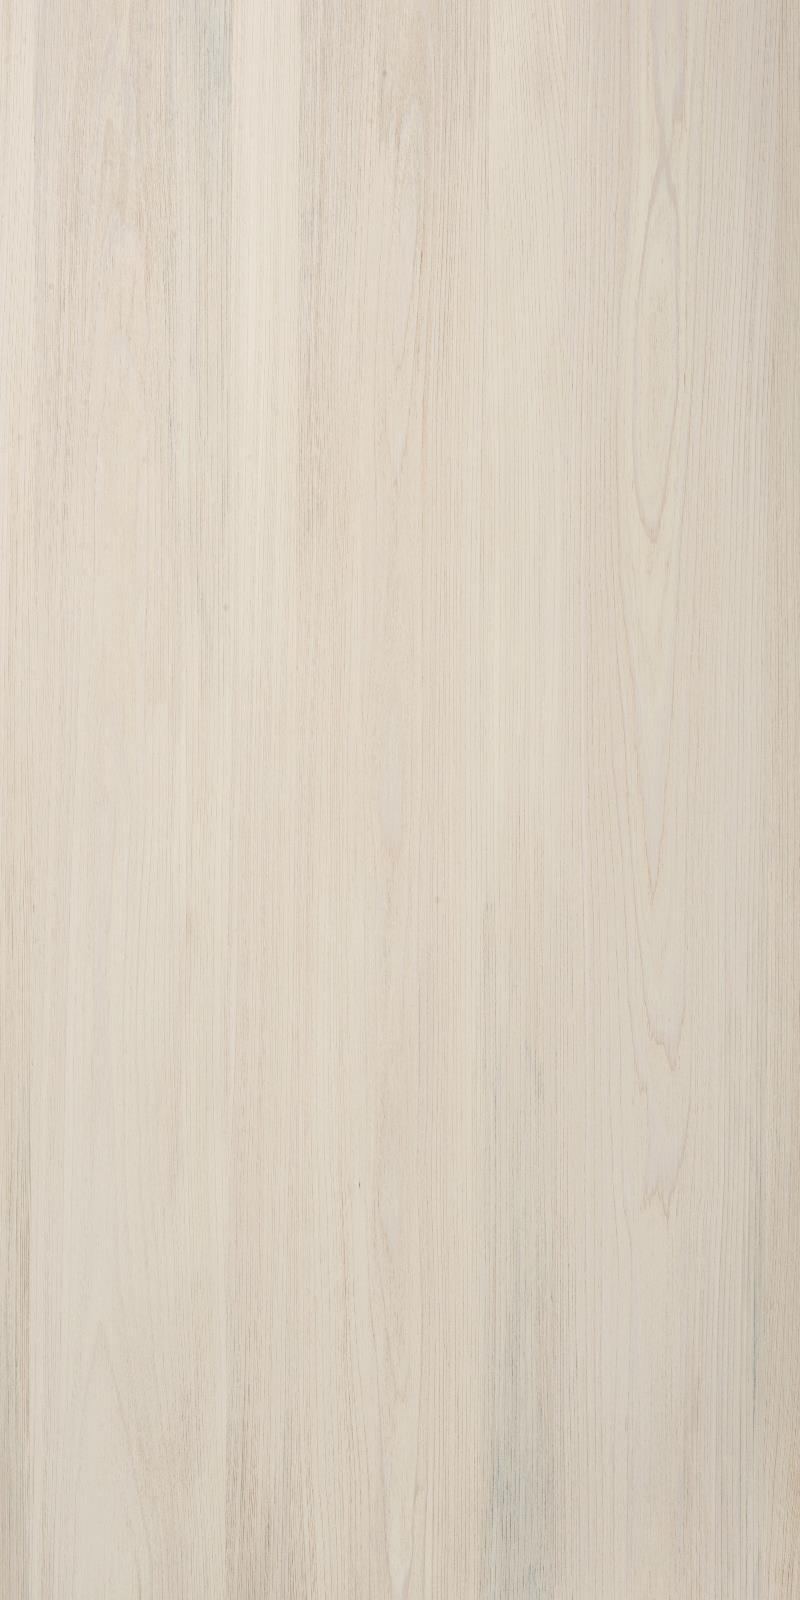 SJ-8272~1H 天然美國檜木實木拼鋼刷塗裝板